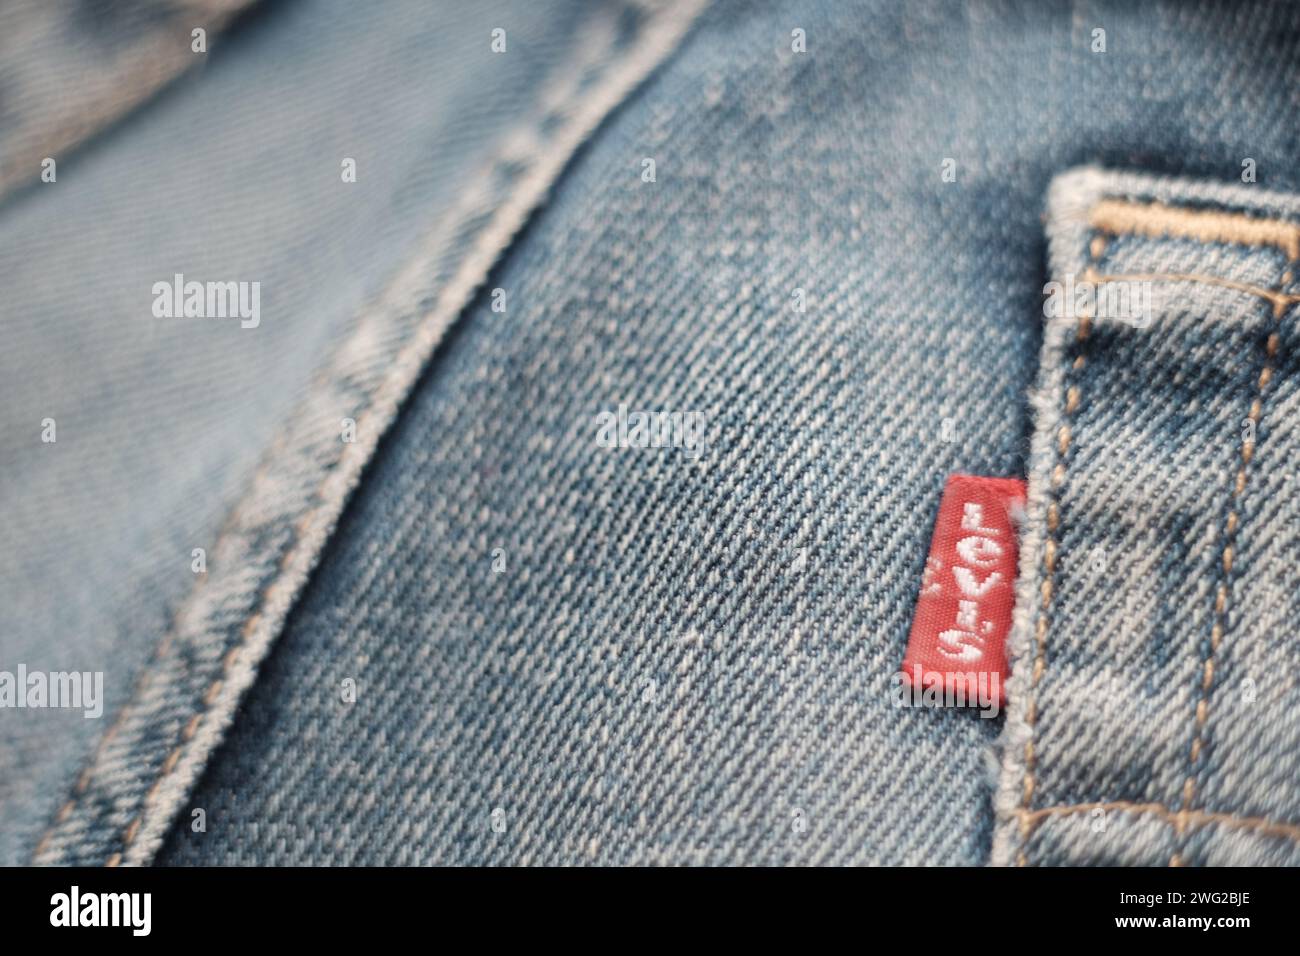 Original vintage levi's denim jeans detail of rear label Stock Photo